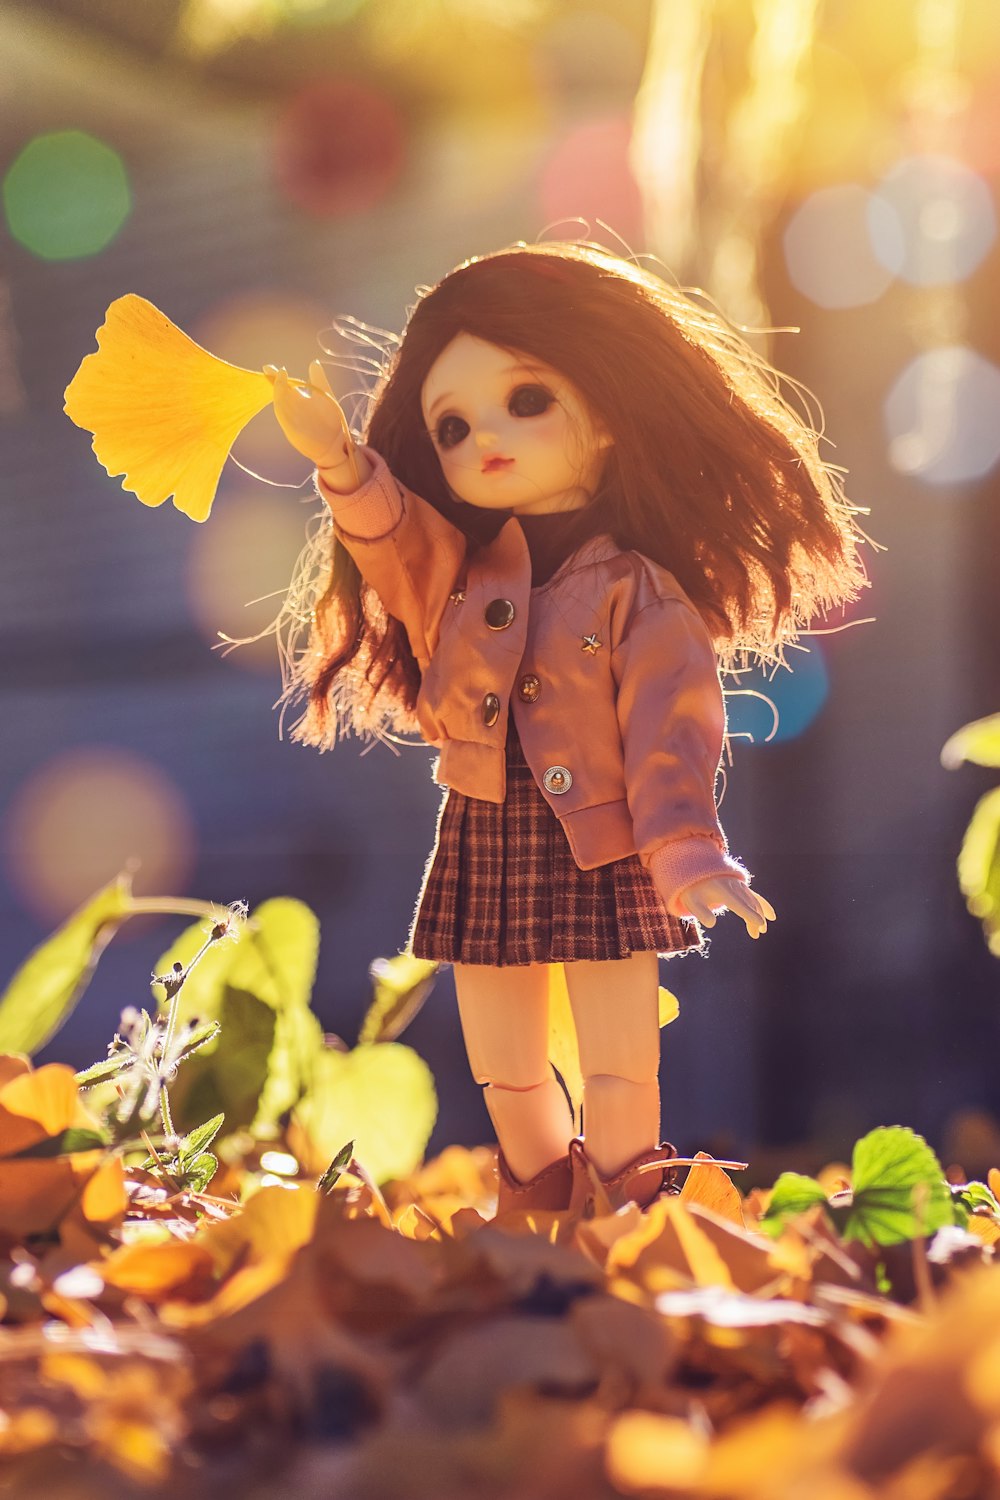 bambola in piedi su foglie marroni